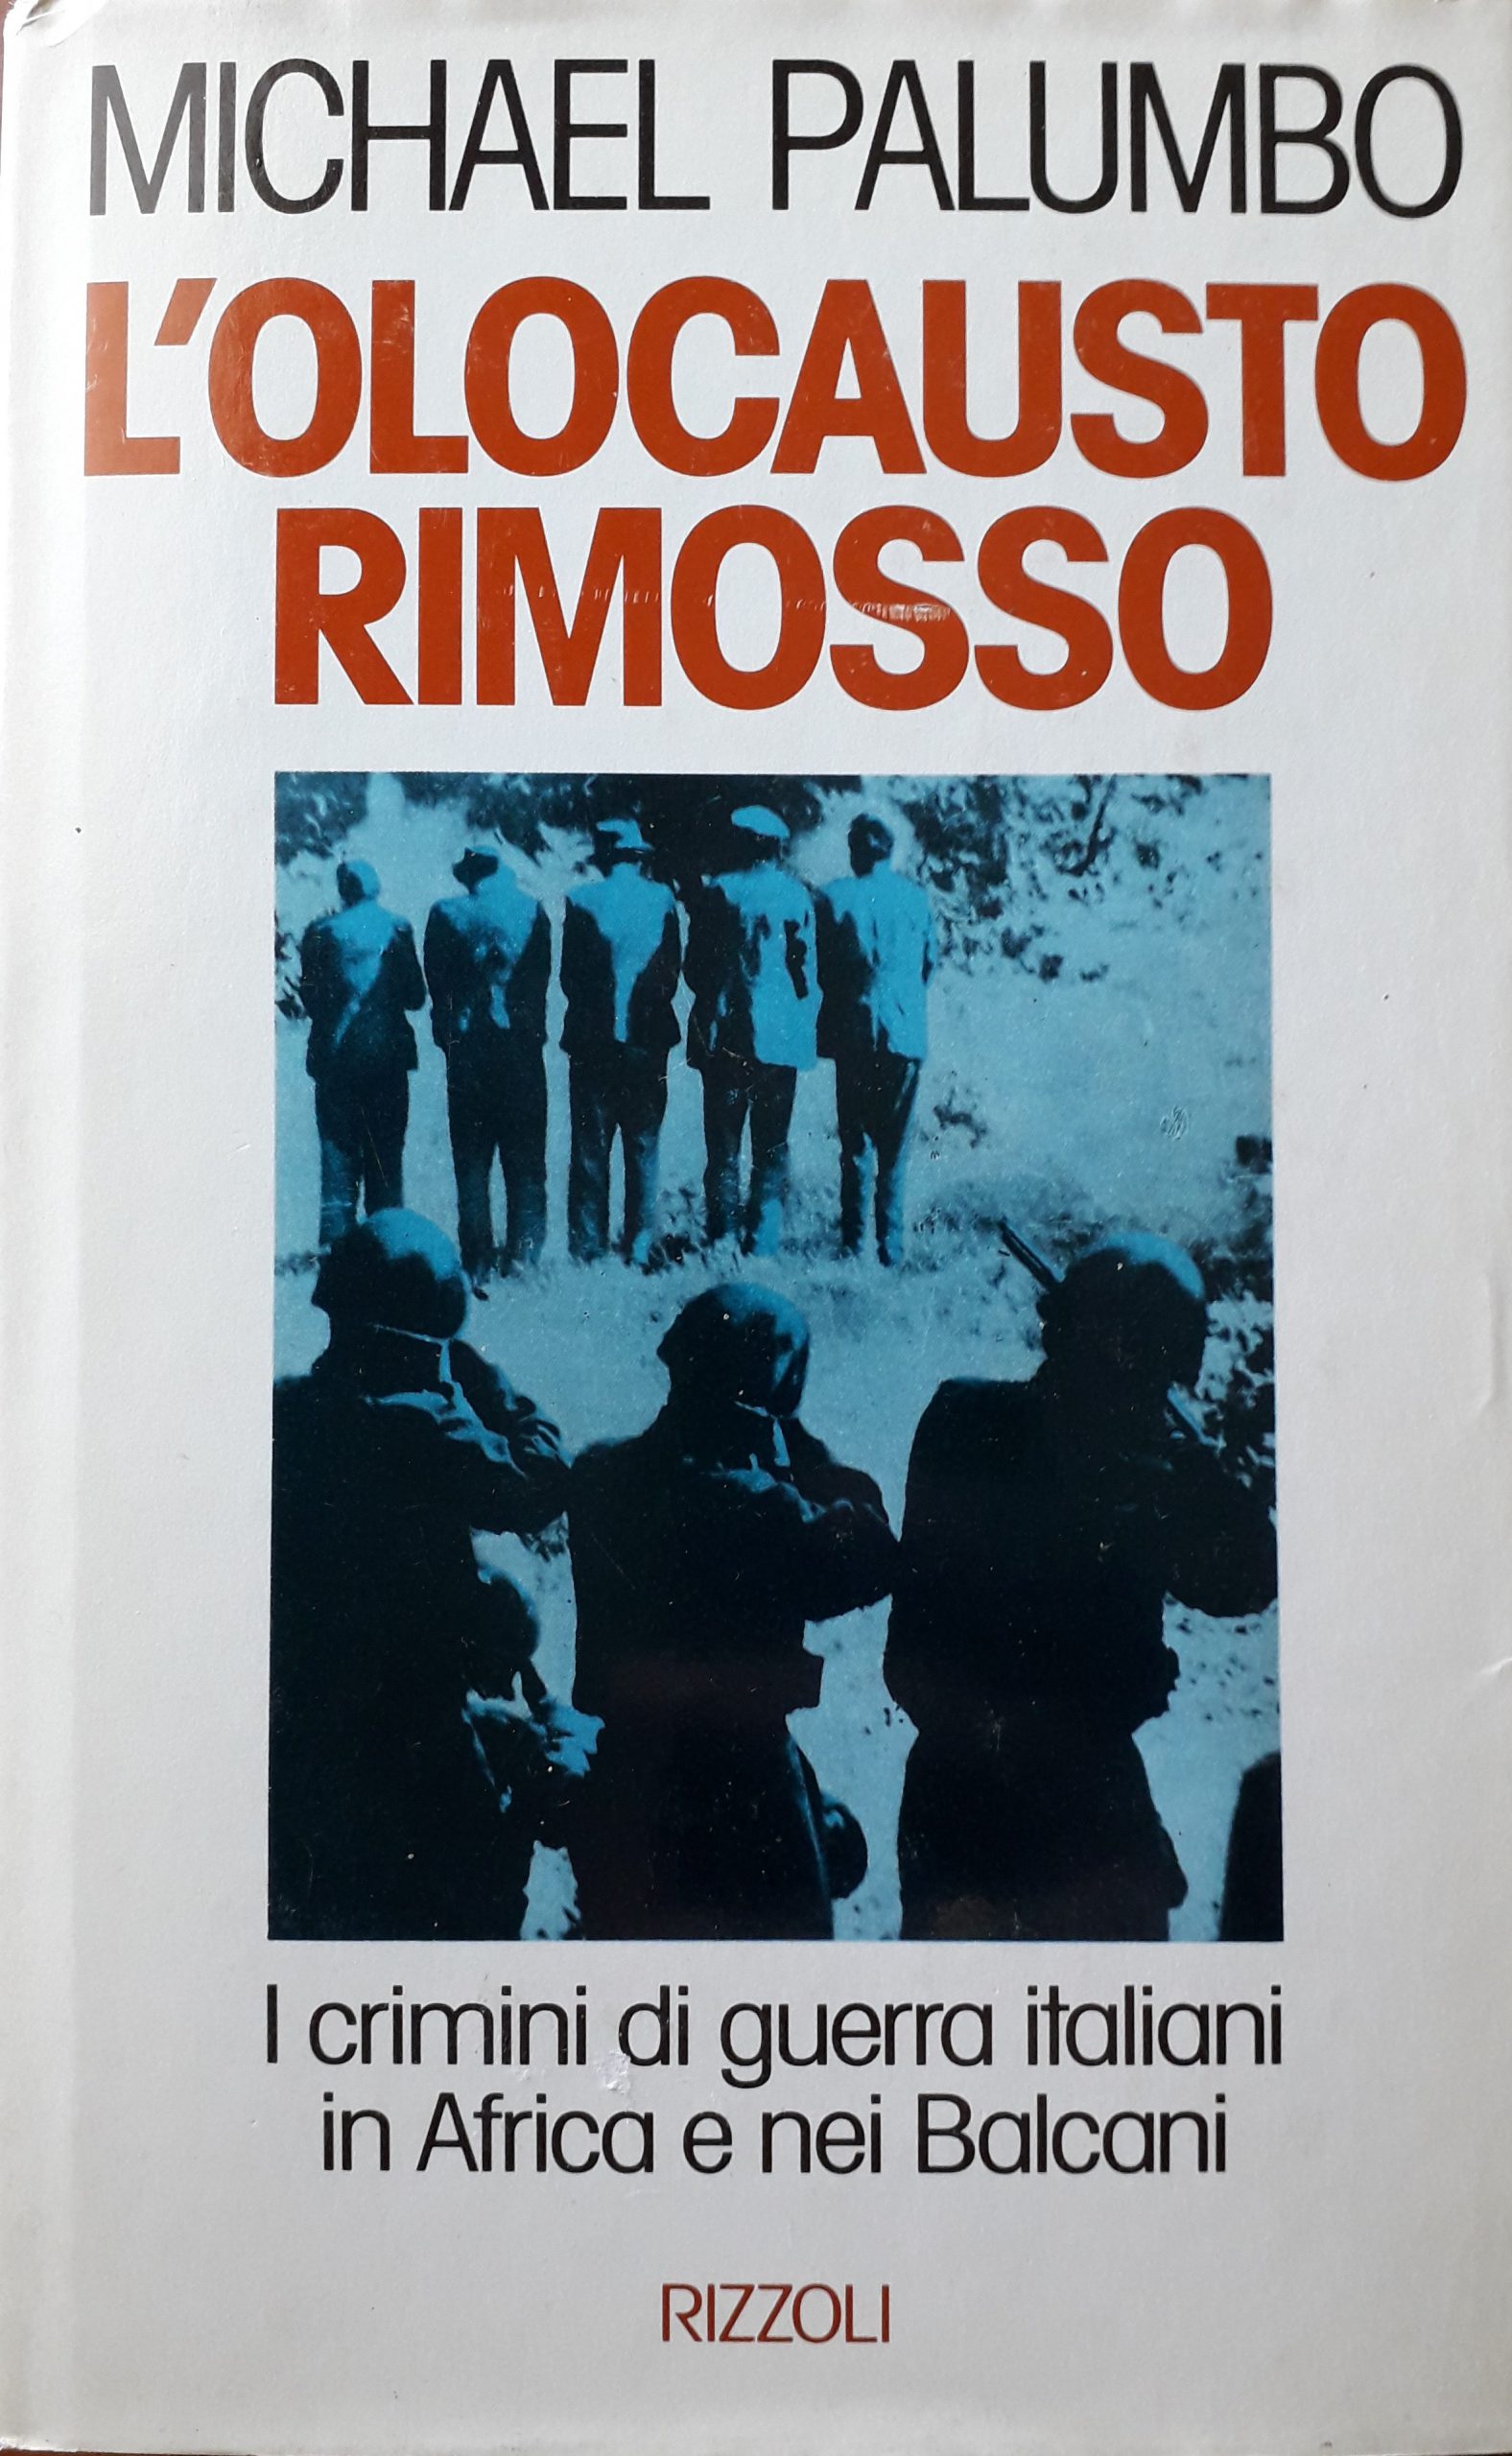 “L’olocausto rimosso” di Michael Palumbo: un libro mai uscito. Eccolo qua!